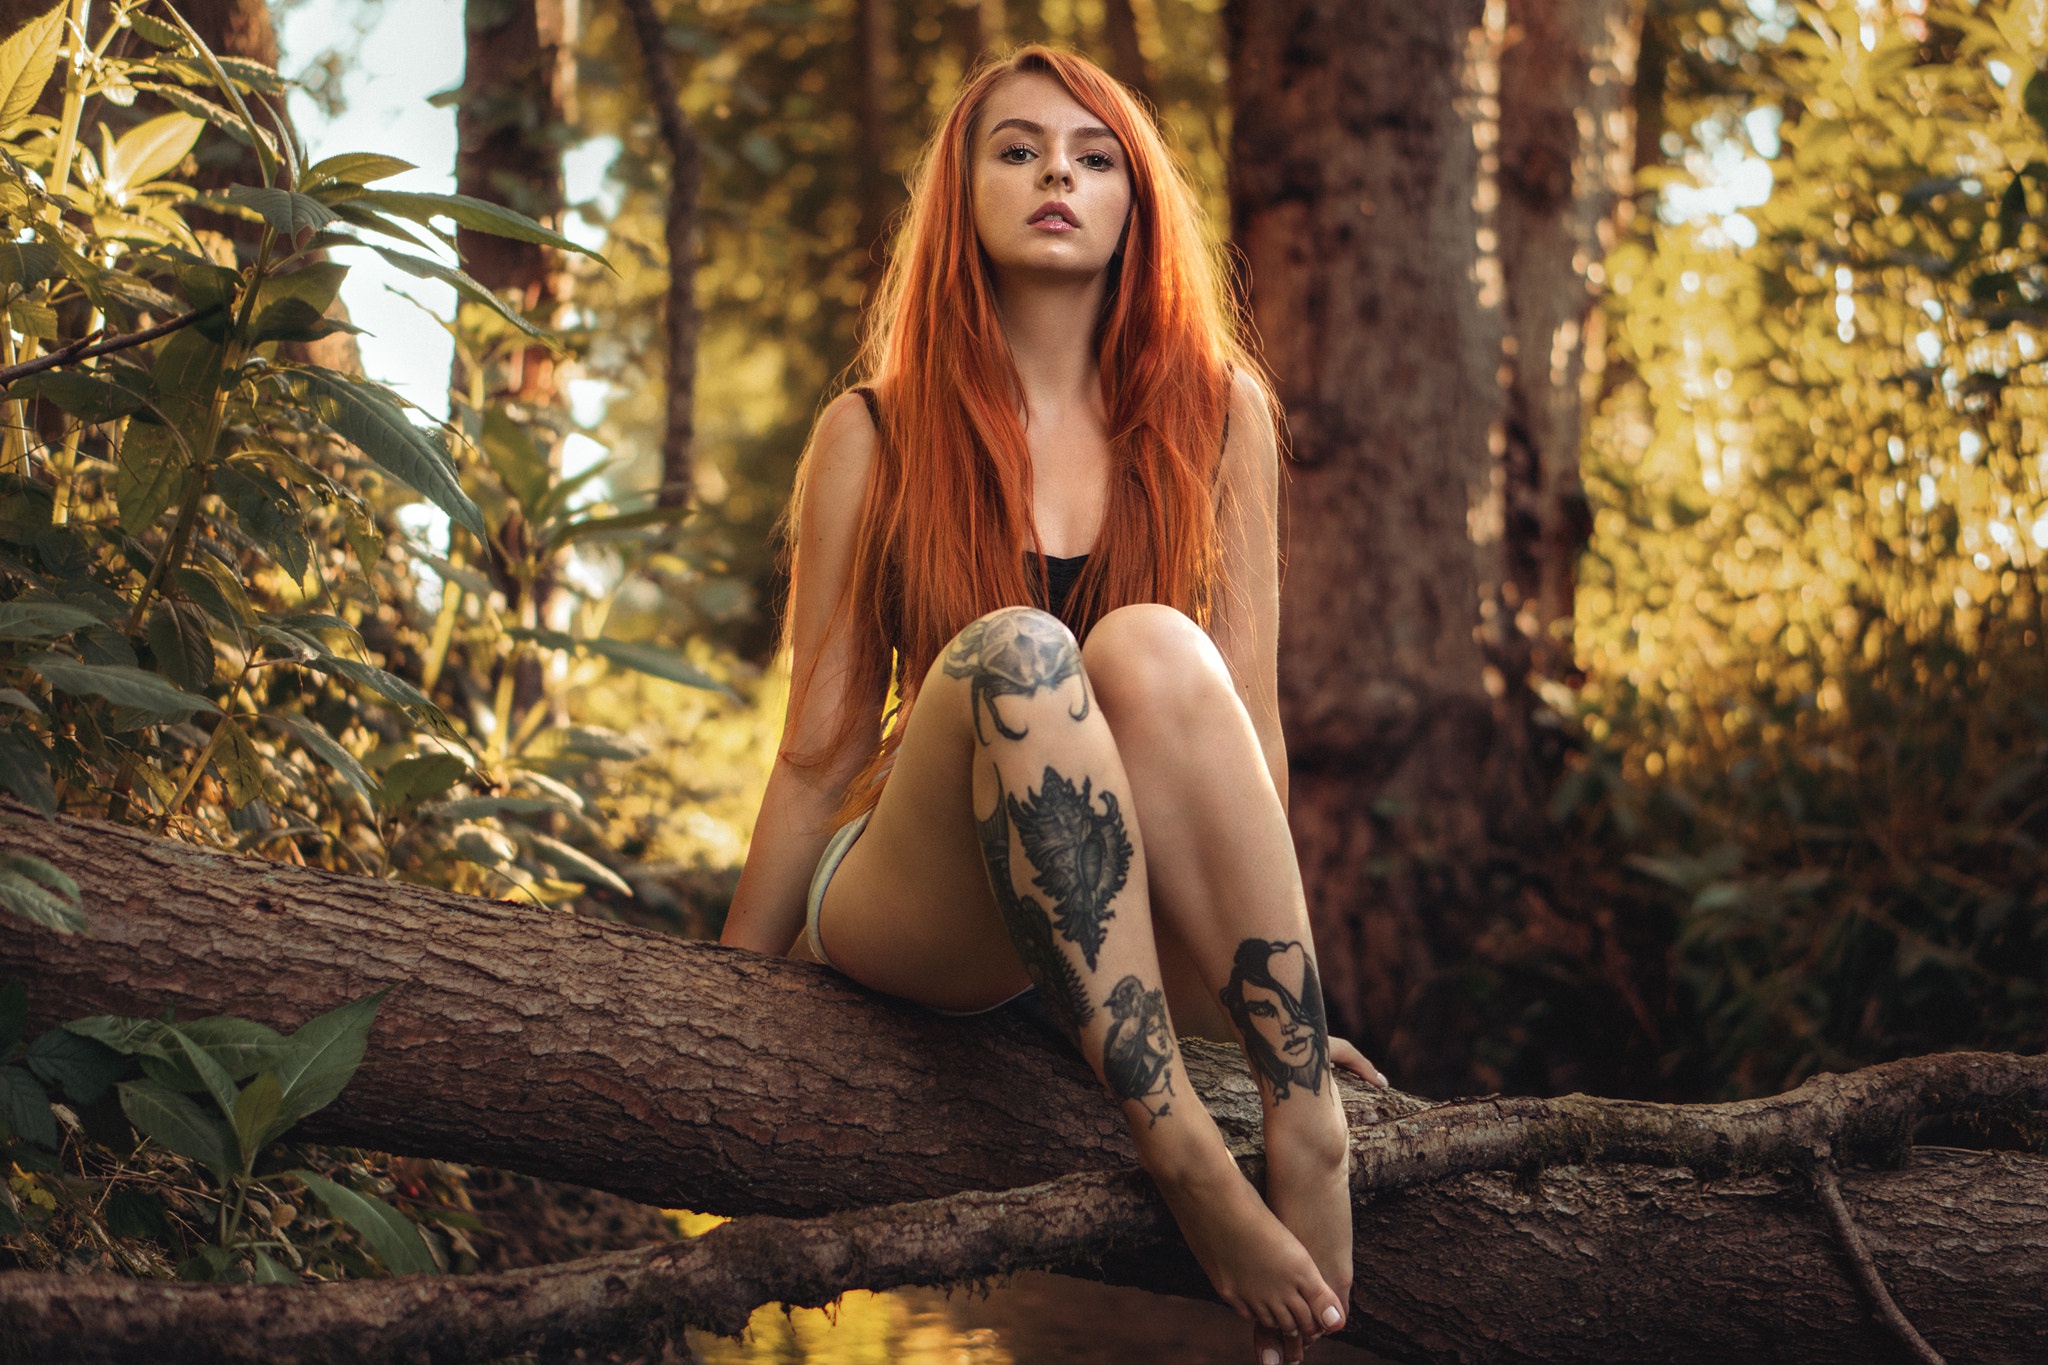 People 2048x1365 women Martin Kühn women outdoors legs tattoo nature forest barefoot redhead